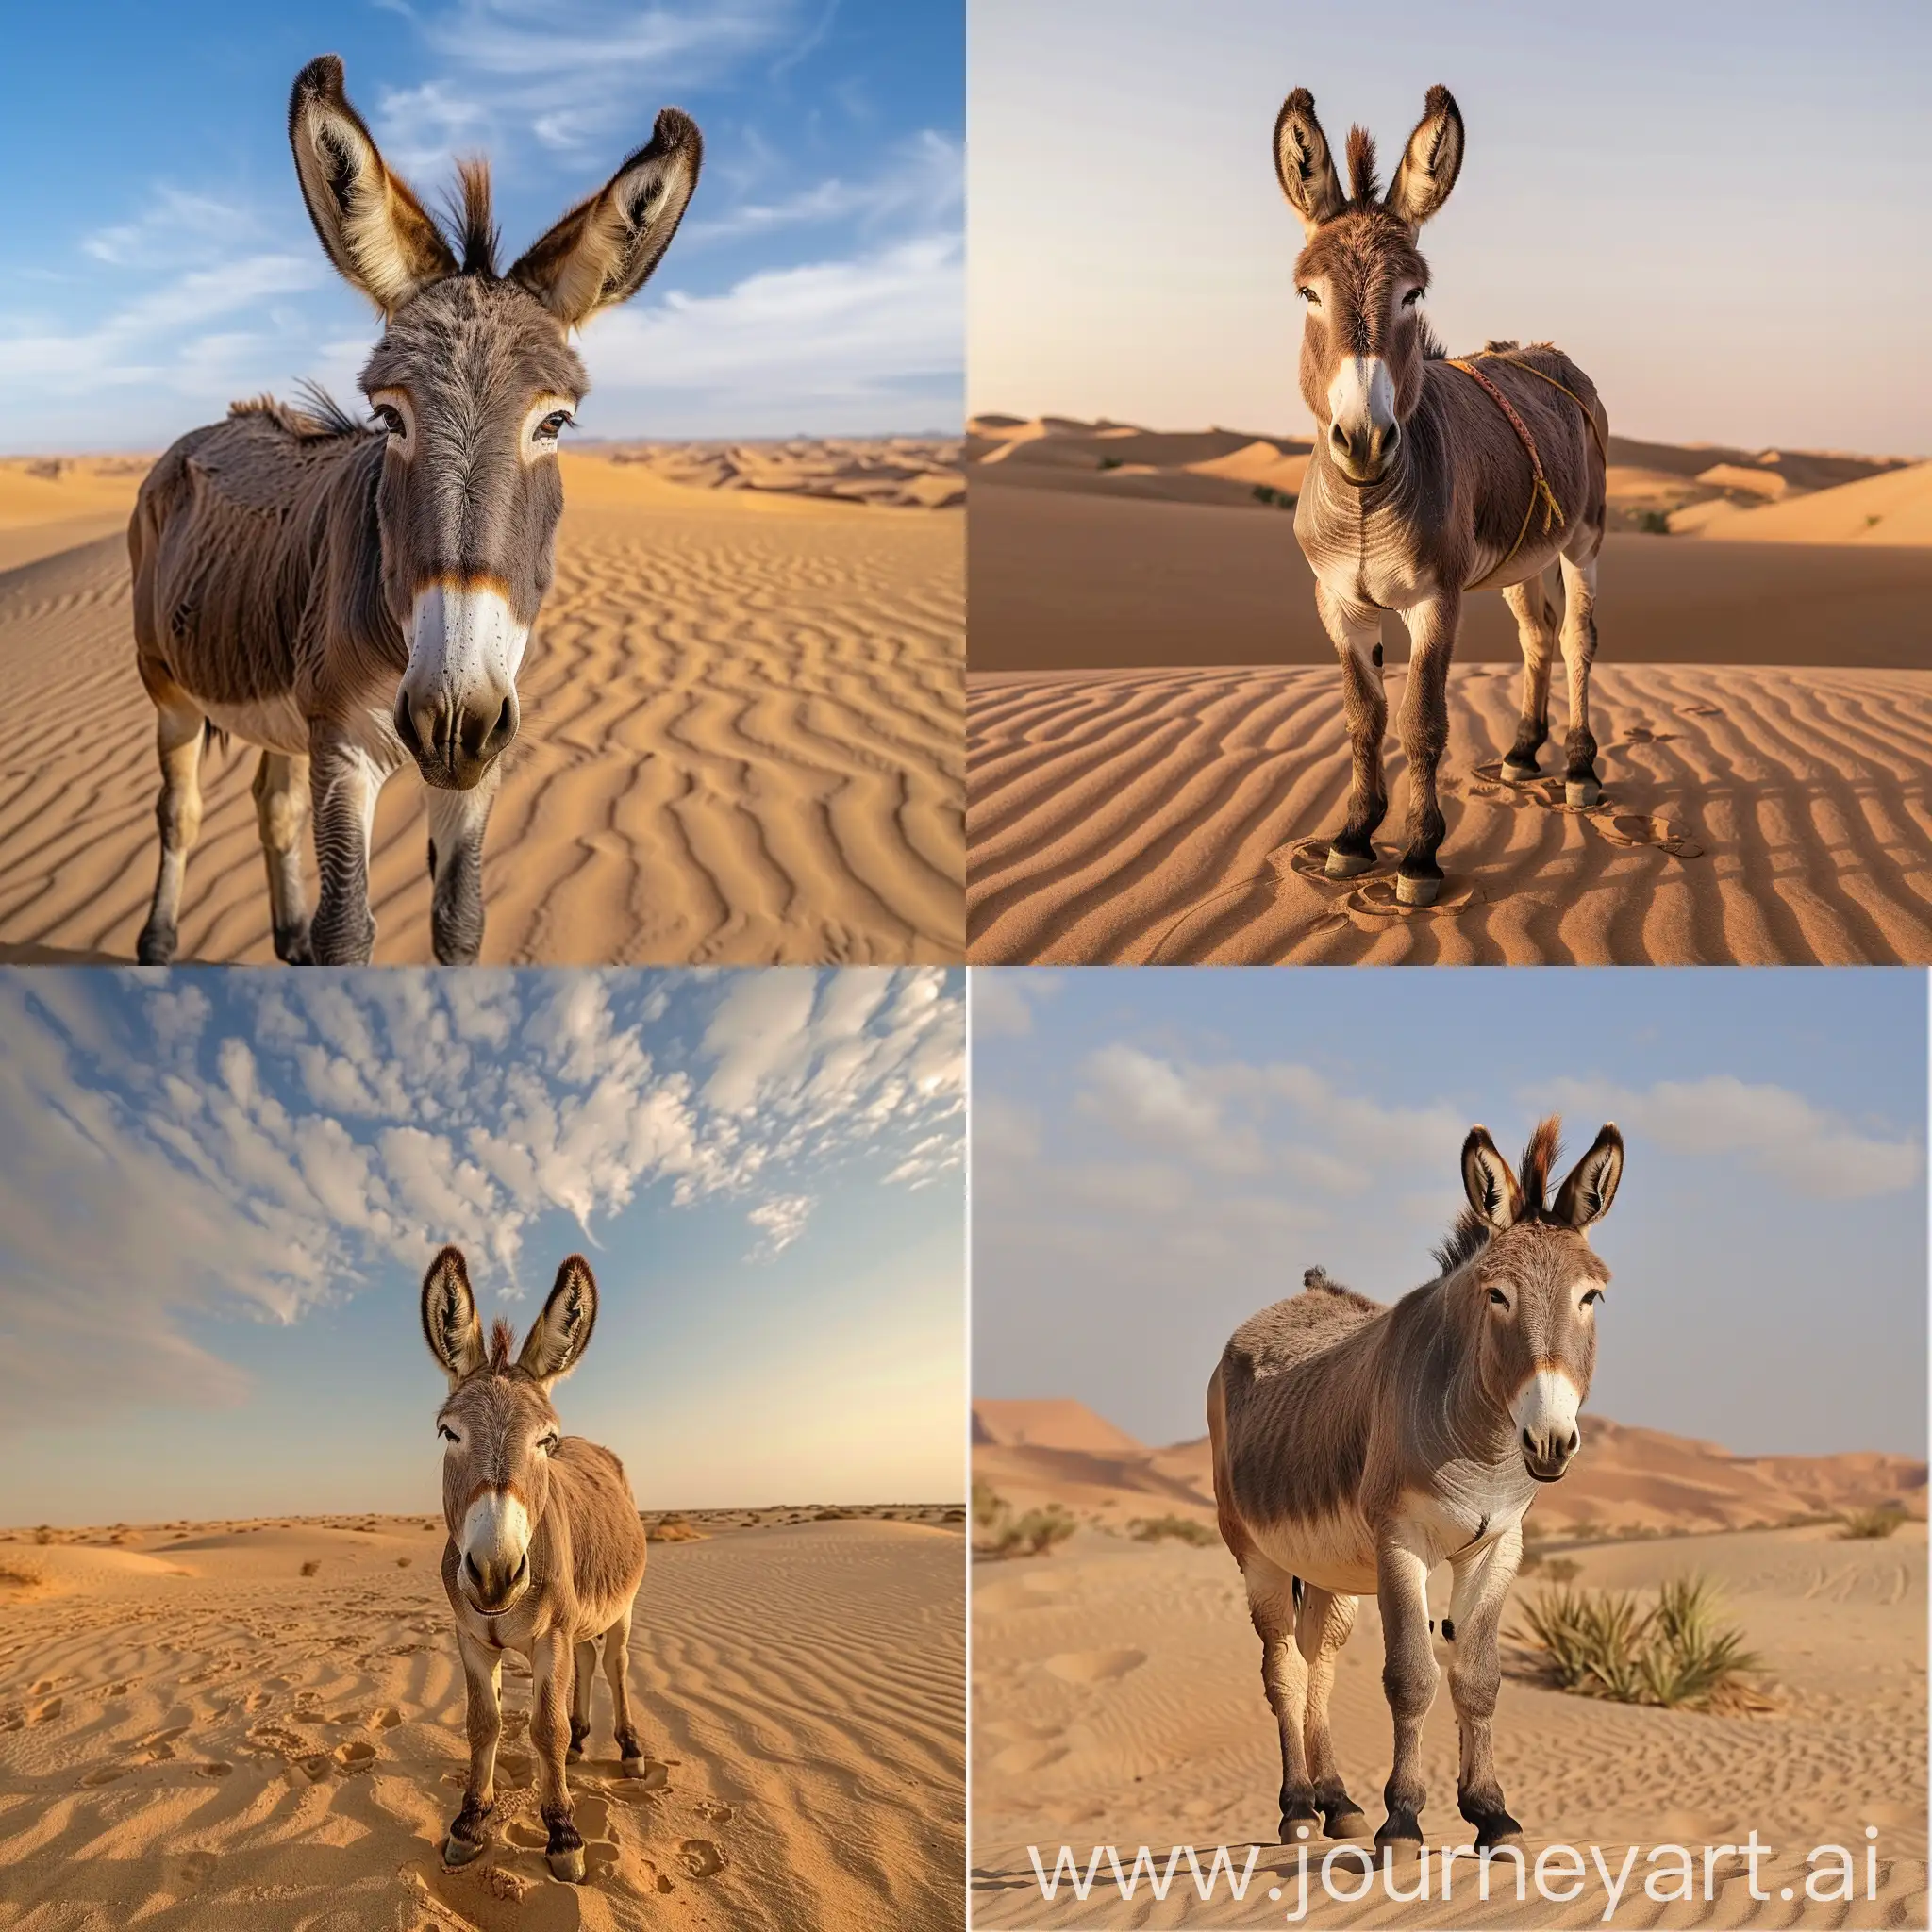 Lonely-Donkey-Roaming-the-Arid-Desert-Landscape